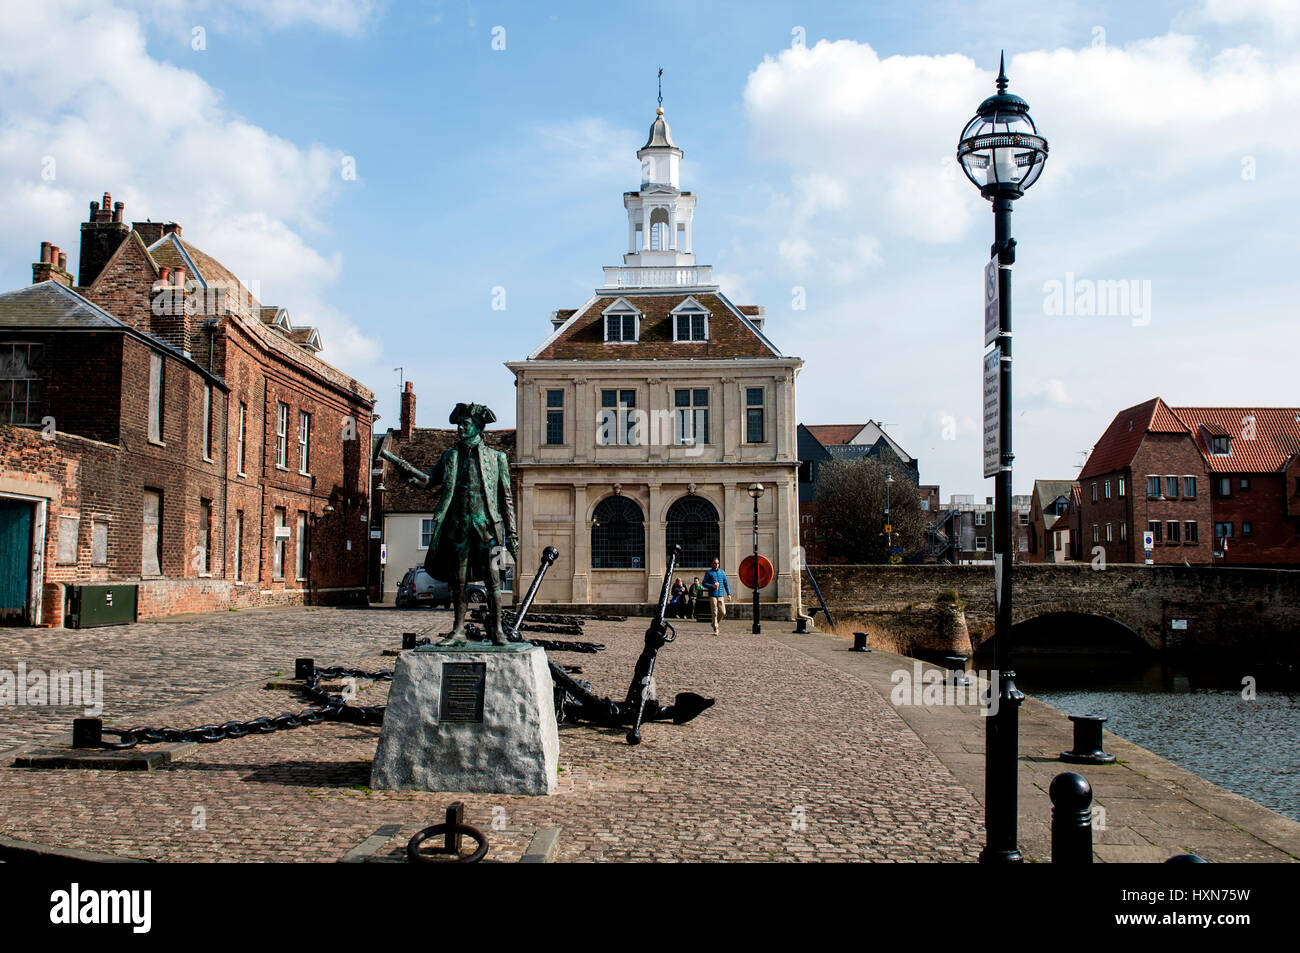 Le Custom House et le capitaine George Vancouver statue, Purfleet Quay, King's Lynn, Norfolk, England, UK Banque D'Images